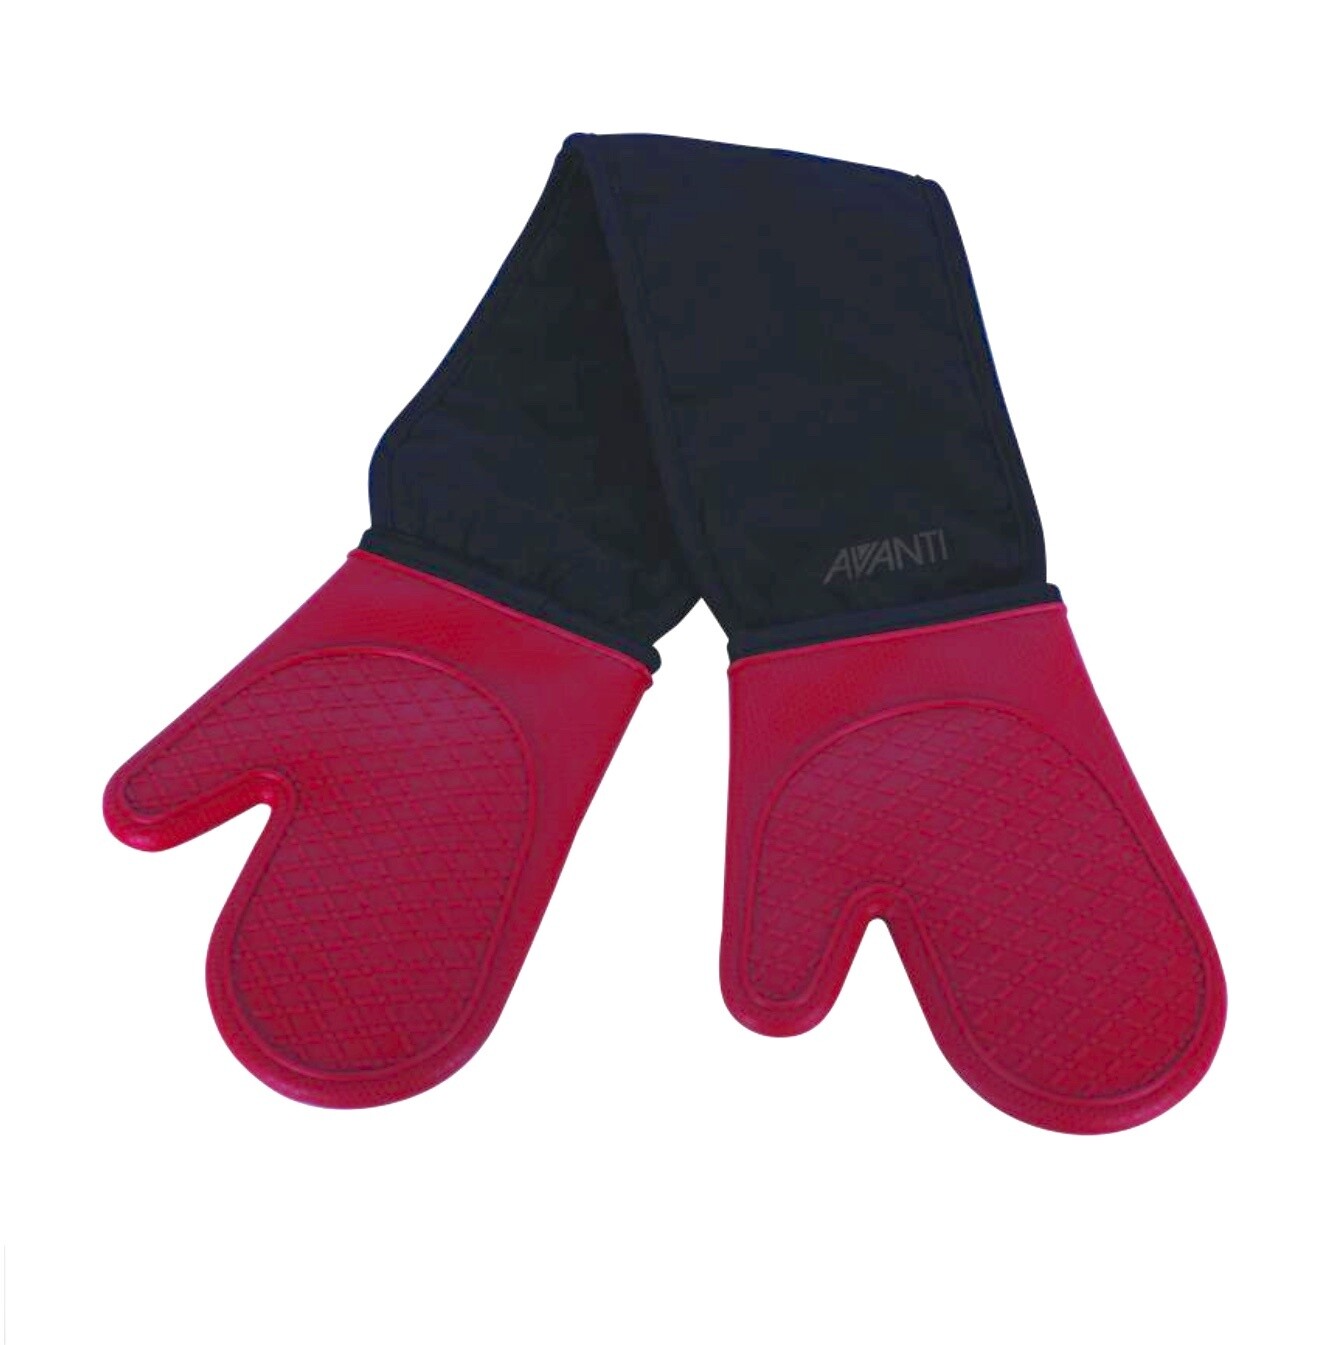 Avanti - Oven Glove Double Silicone - Red